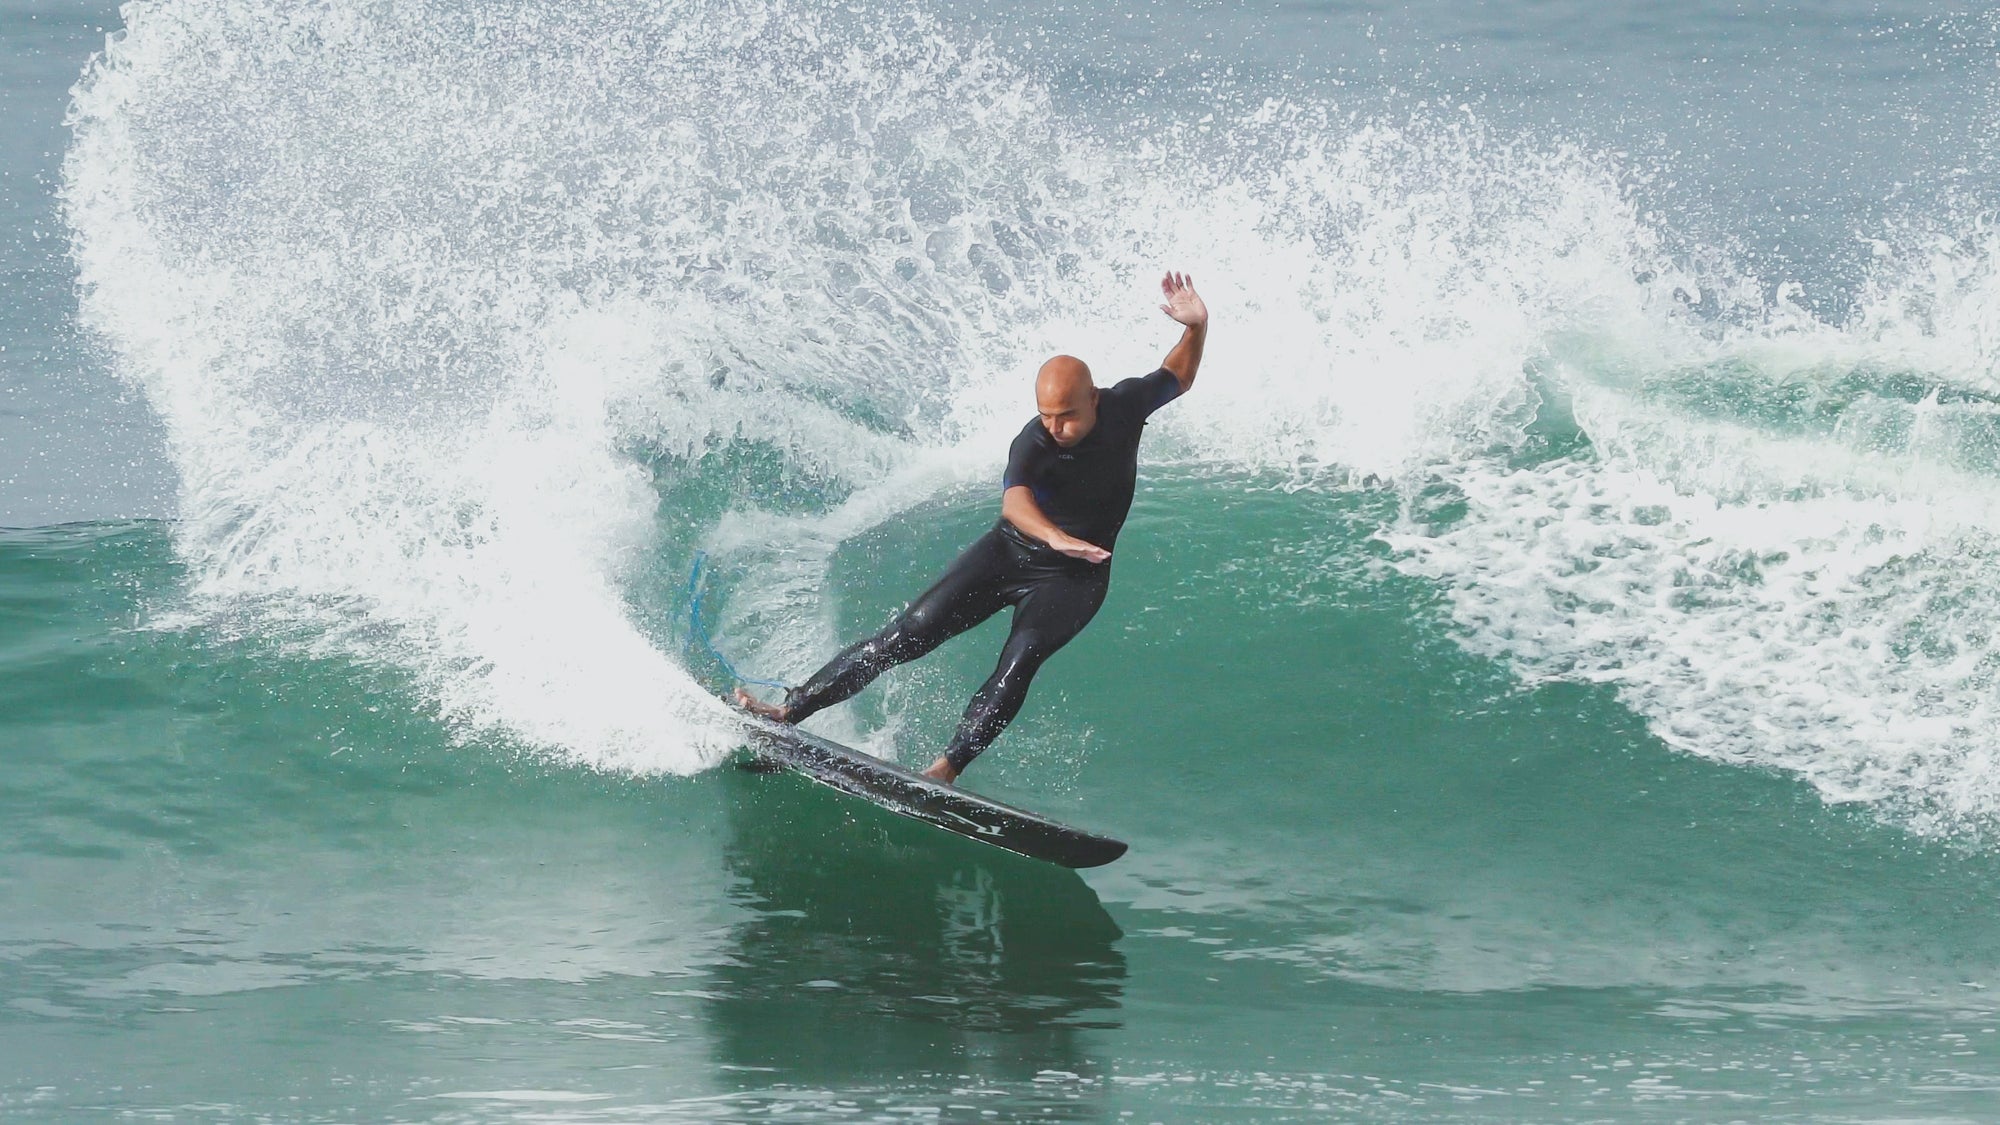 Noel Salas on The Deuce - Rusty Surfboards